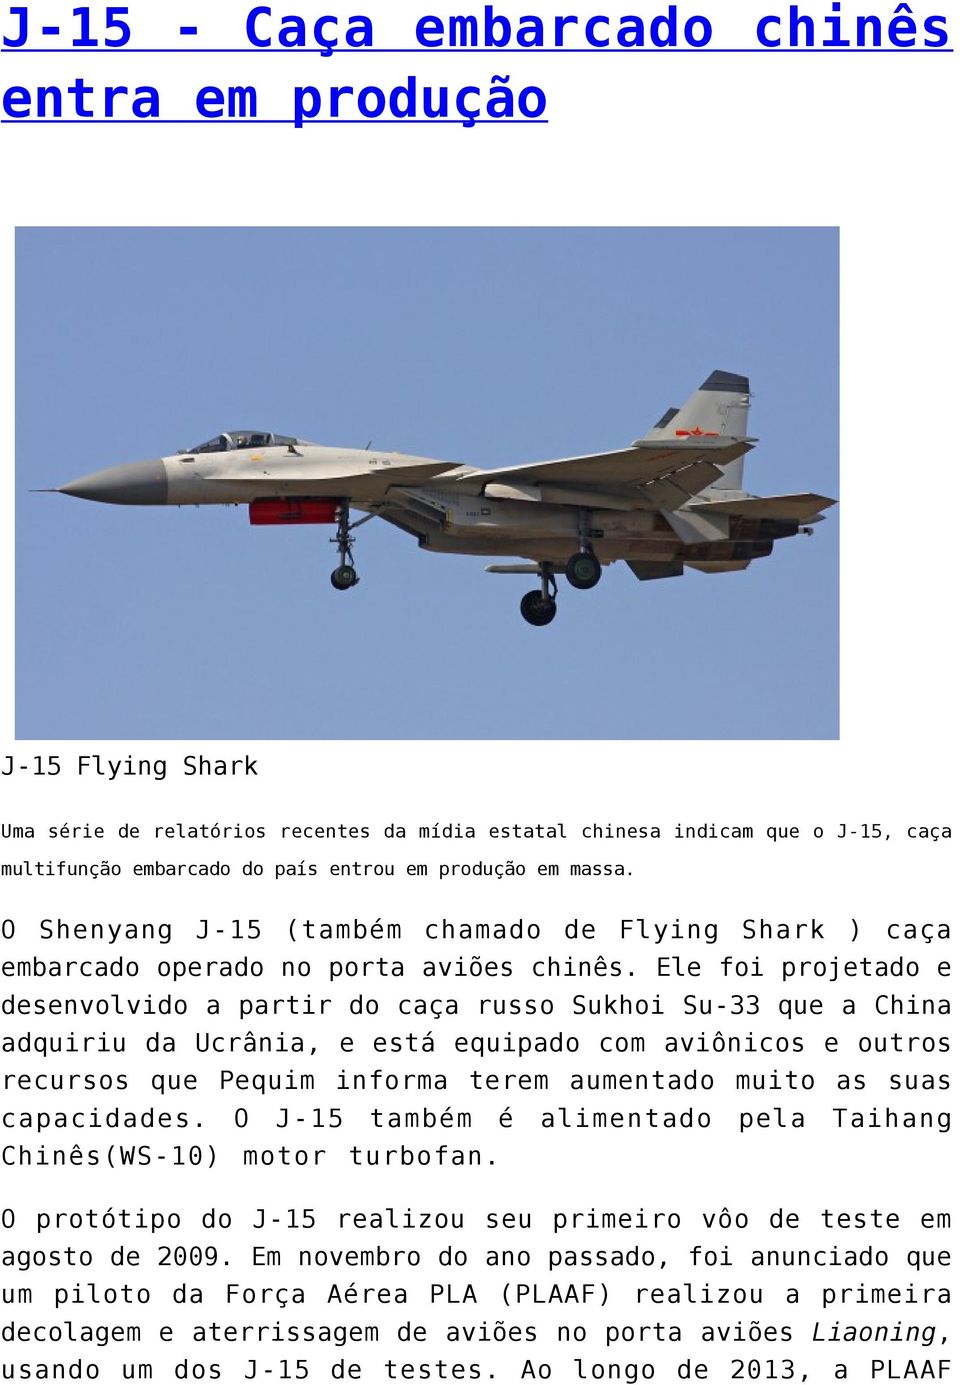 Ele foi projetado e desenvolvido a partir do caça russo Sukhoi Su-33 que a China adquiriu da Ucrânia, e está equipado com aviônicos e outros recursos que Pequim informa terem aumentado muito as suas